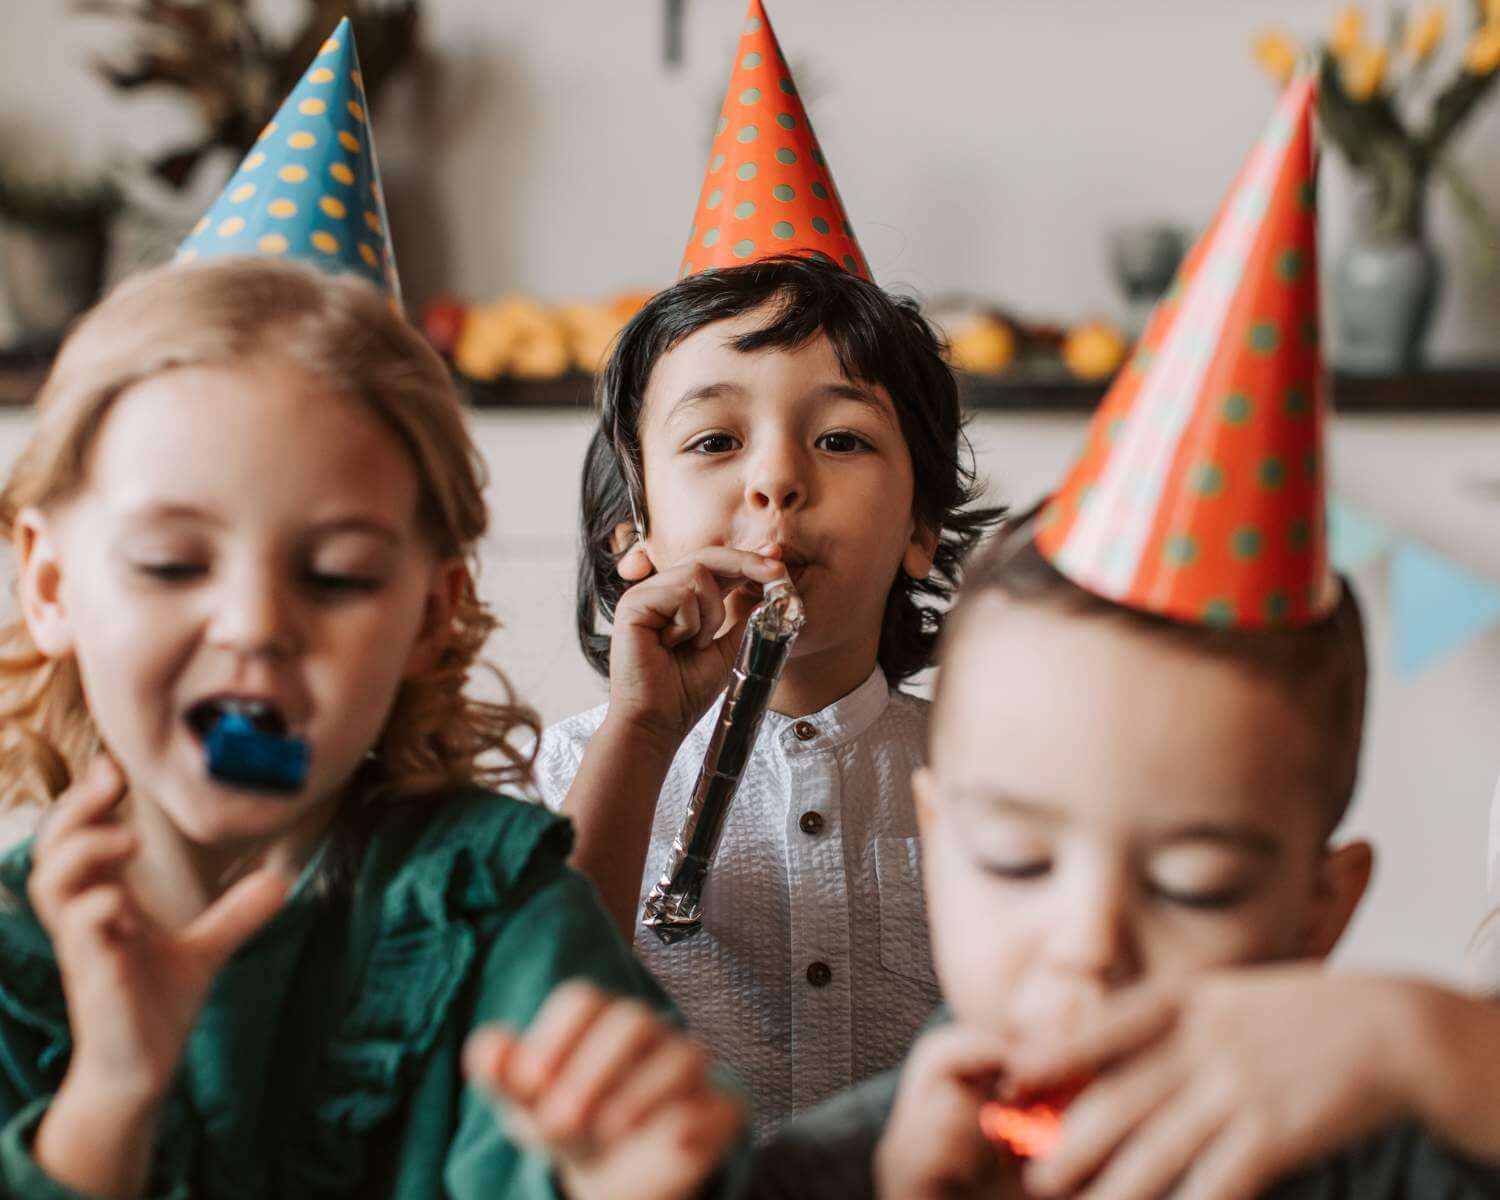 Kinderfeestje voor de kids organiseren? 5 tips!